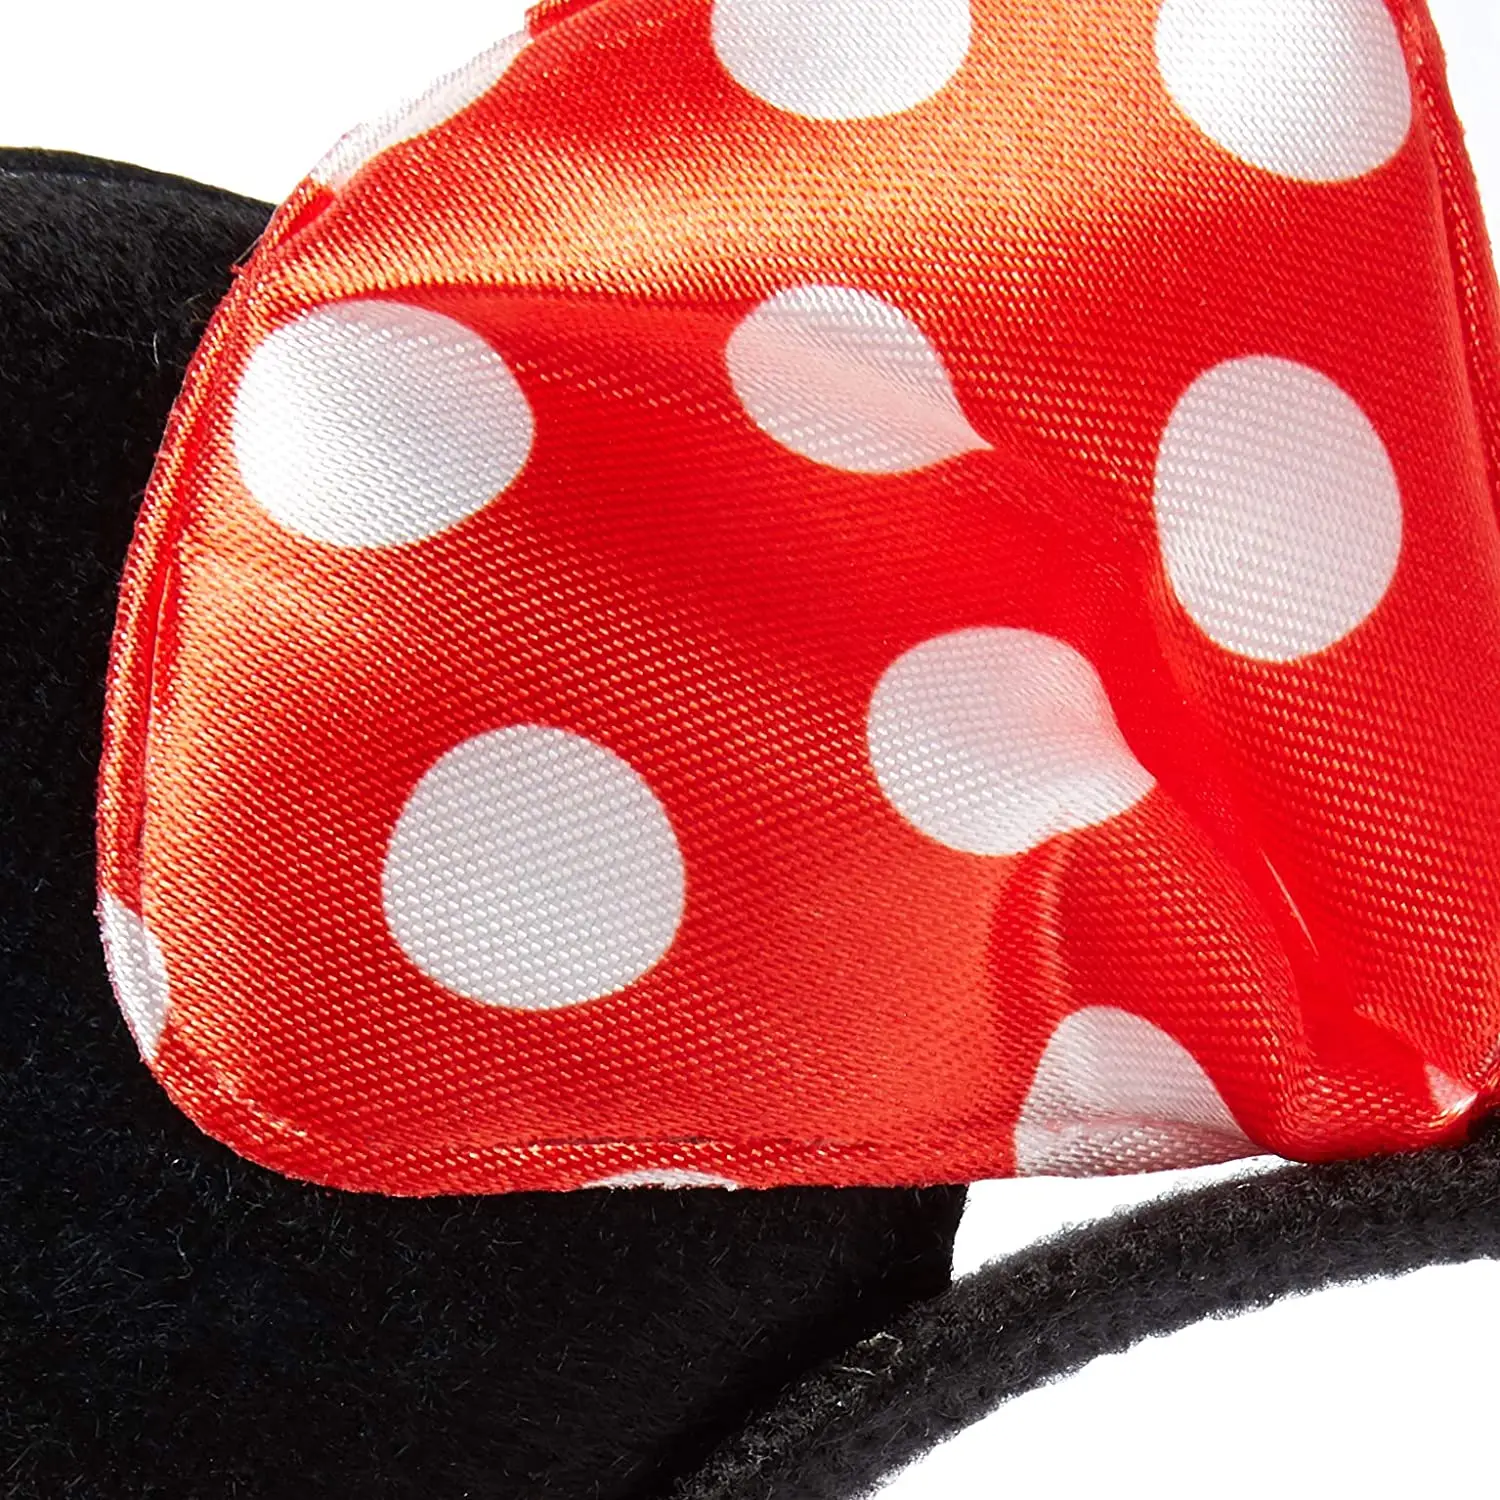 Urechi Minnie Mouse Solid Black Pink Bow Headband Set Costum Deluxe Tesatura Urechi Mickey Mouse Susținere pentru Partidul Favoarea Cadouri